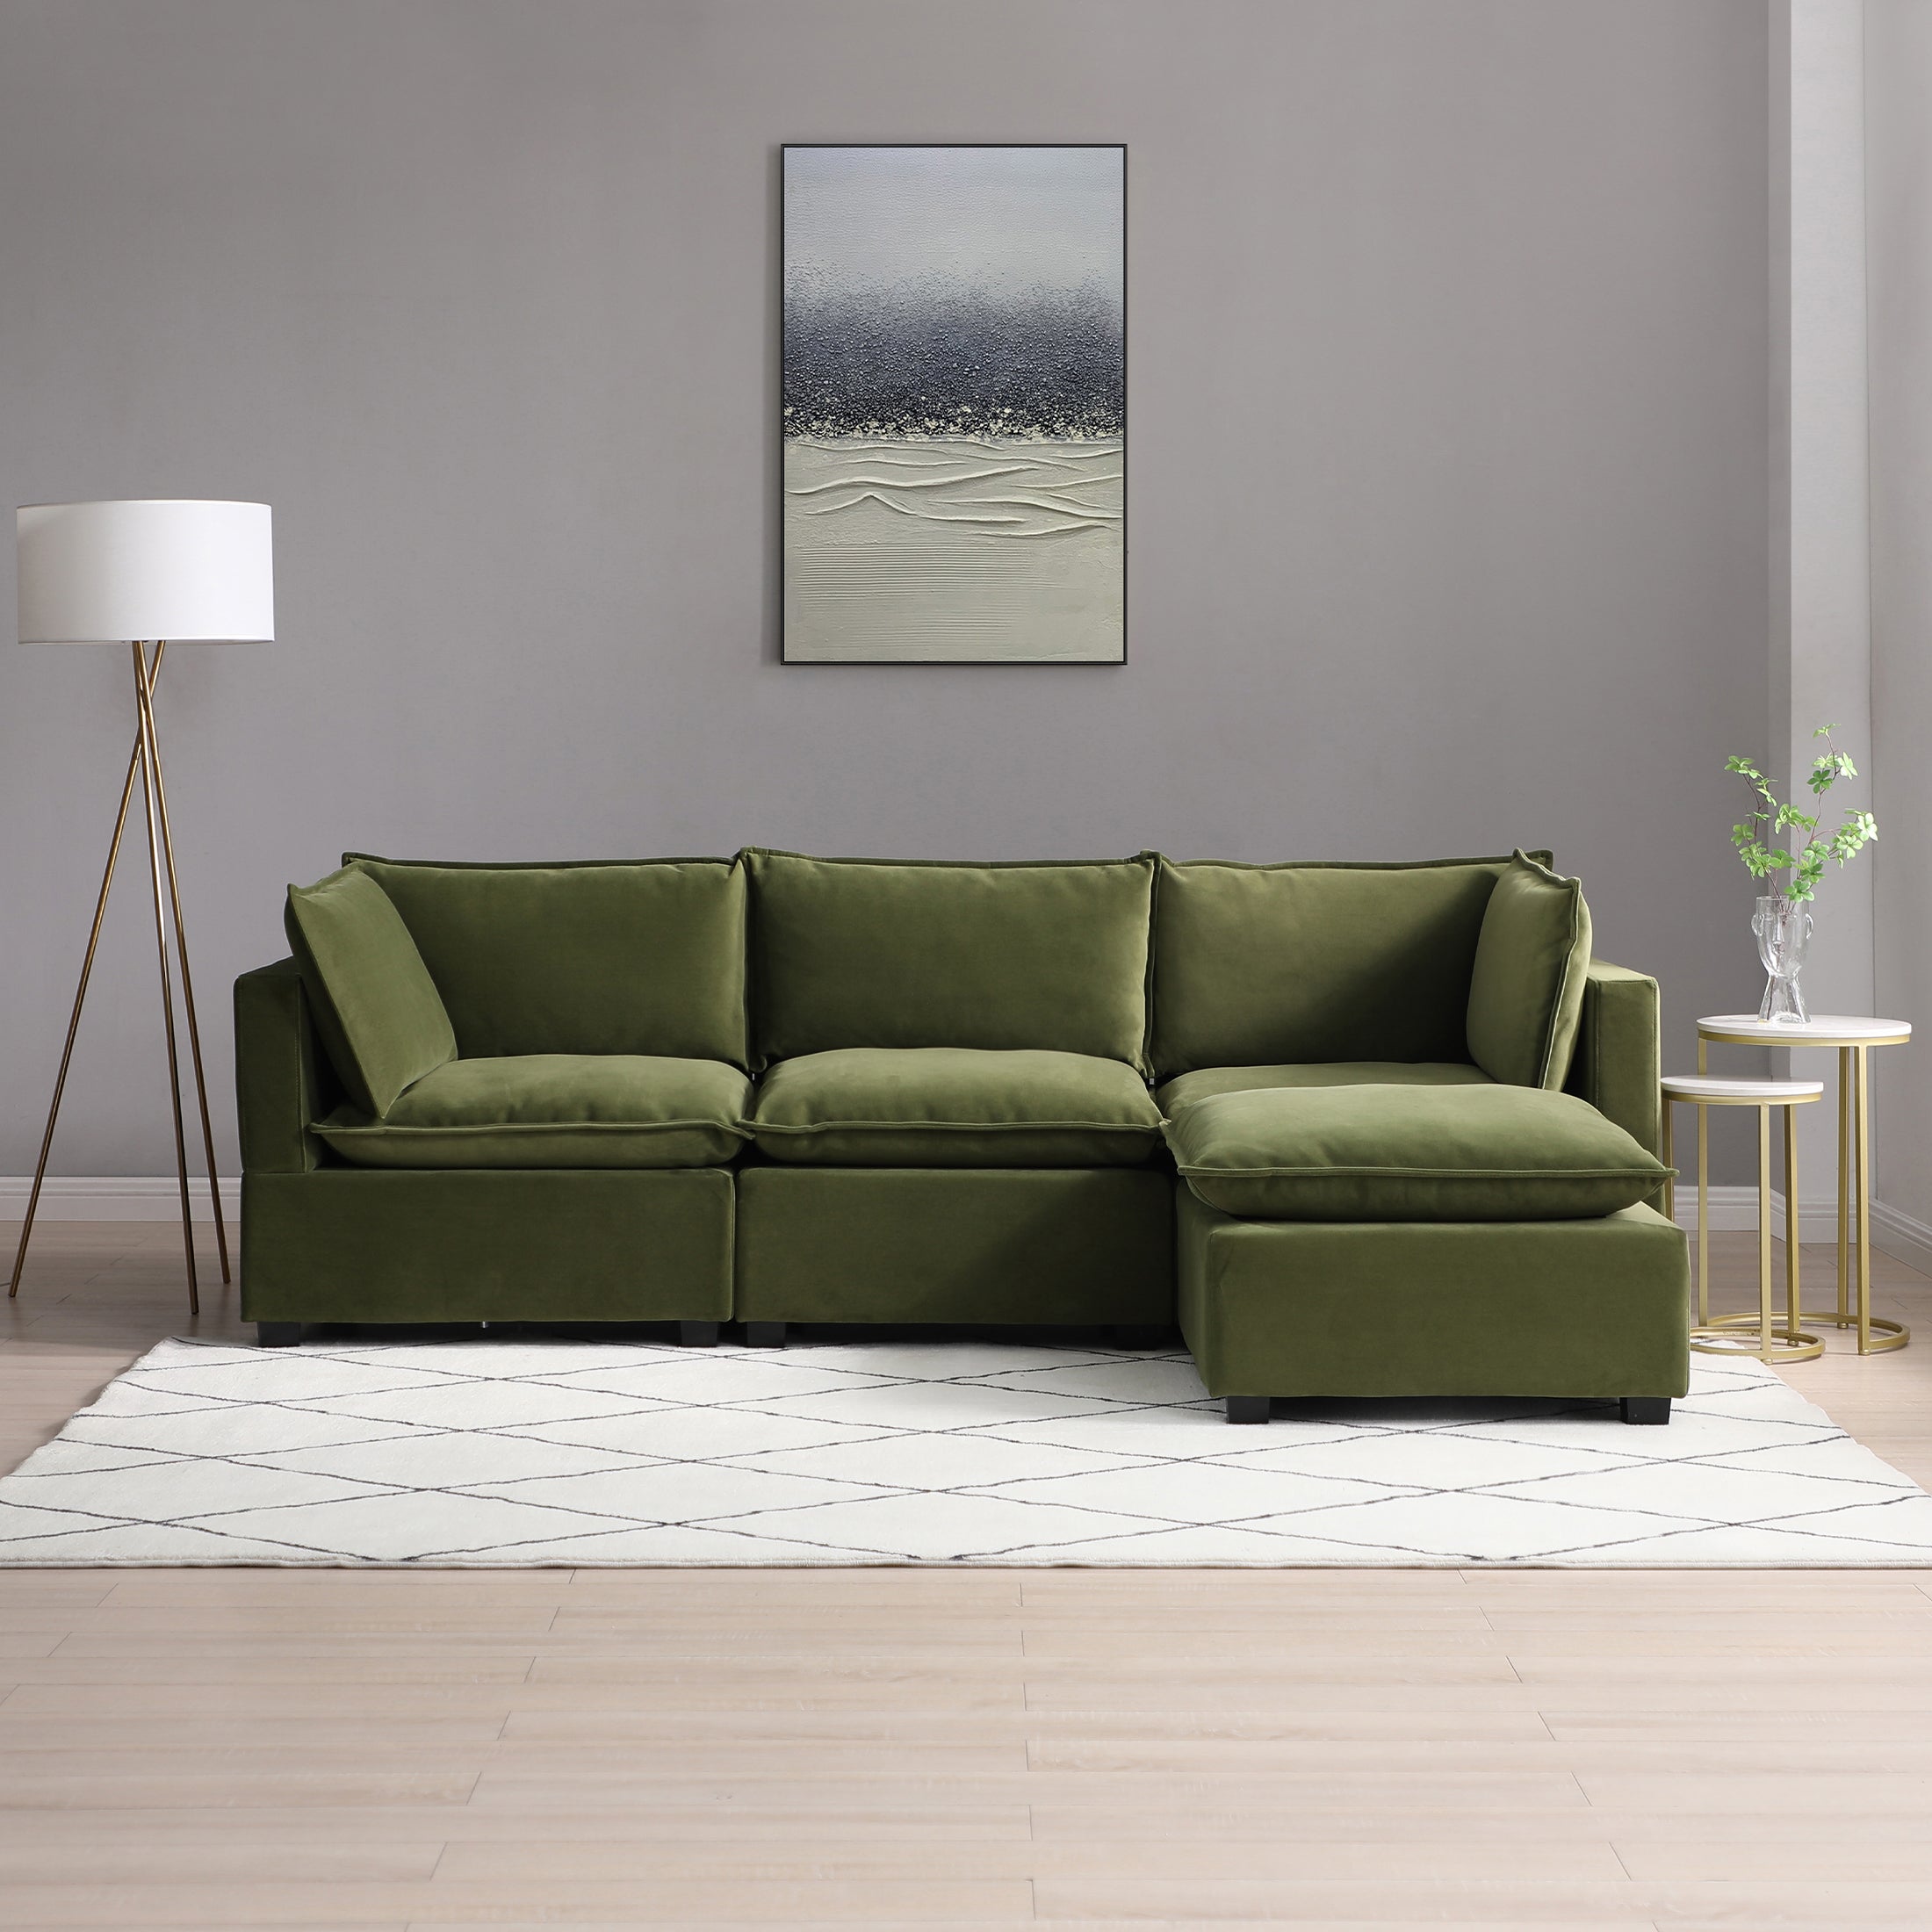 Moda 3 Seater Modular Sofa With Chaise Olive Velvet Green